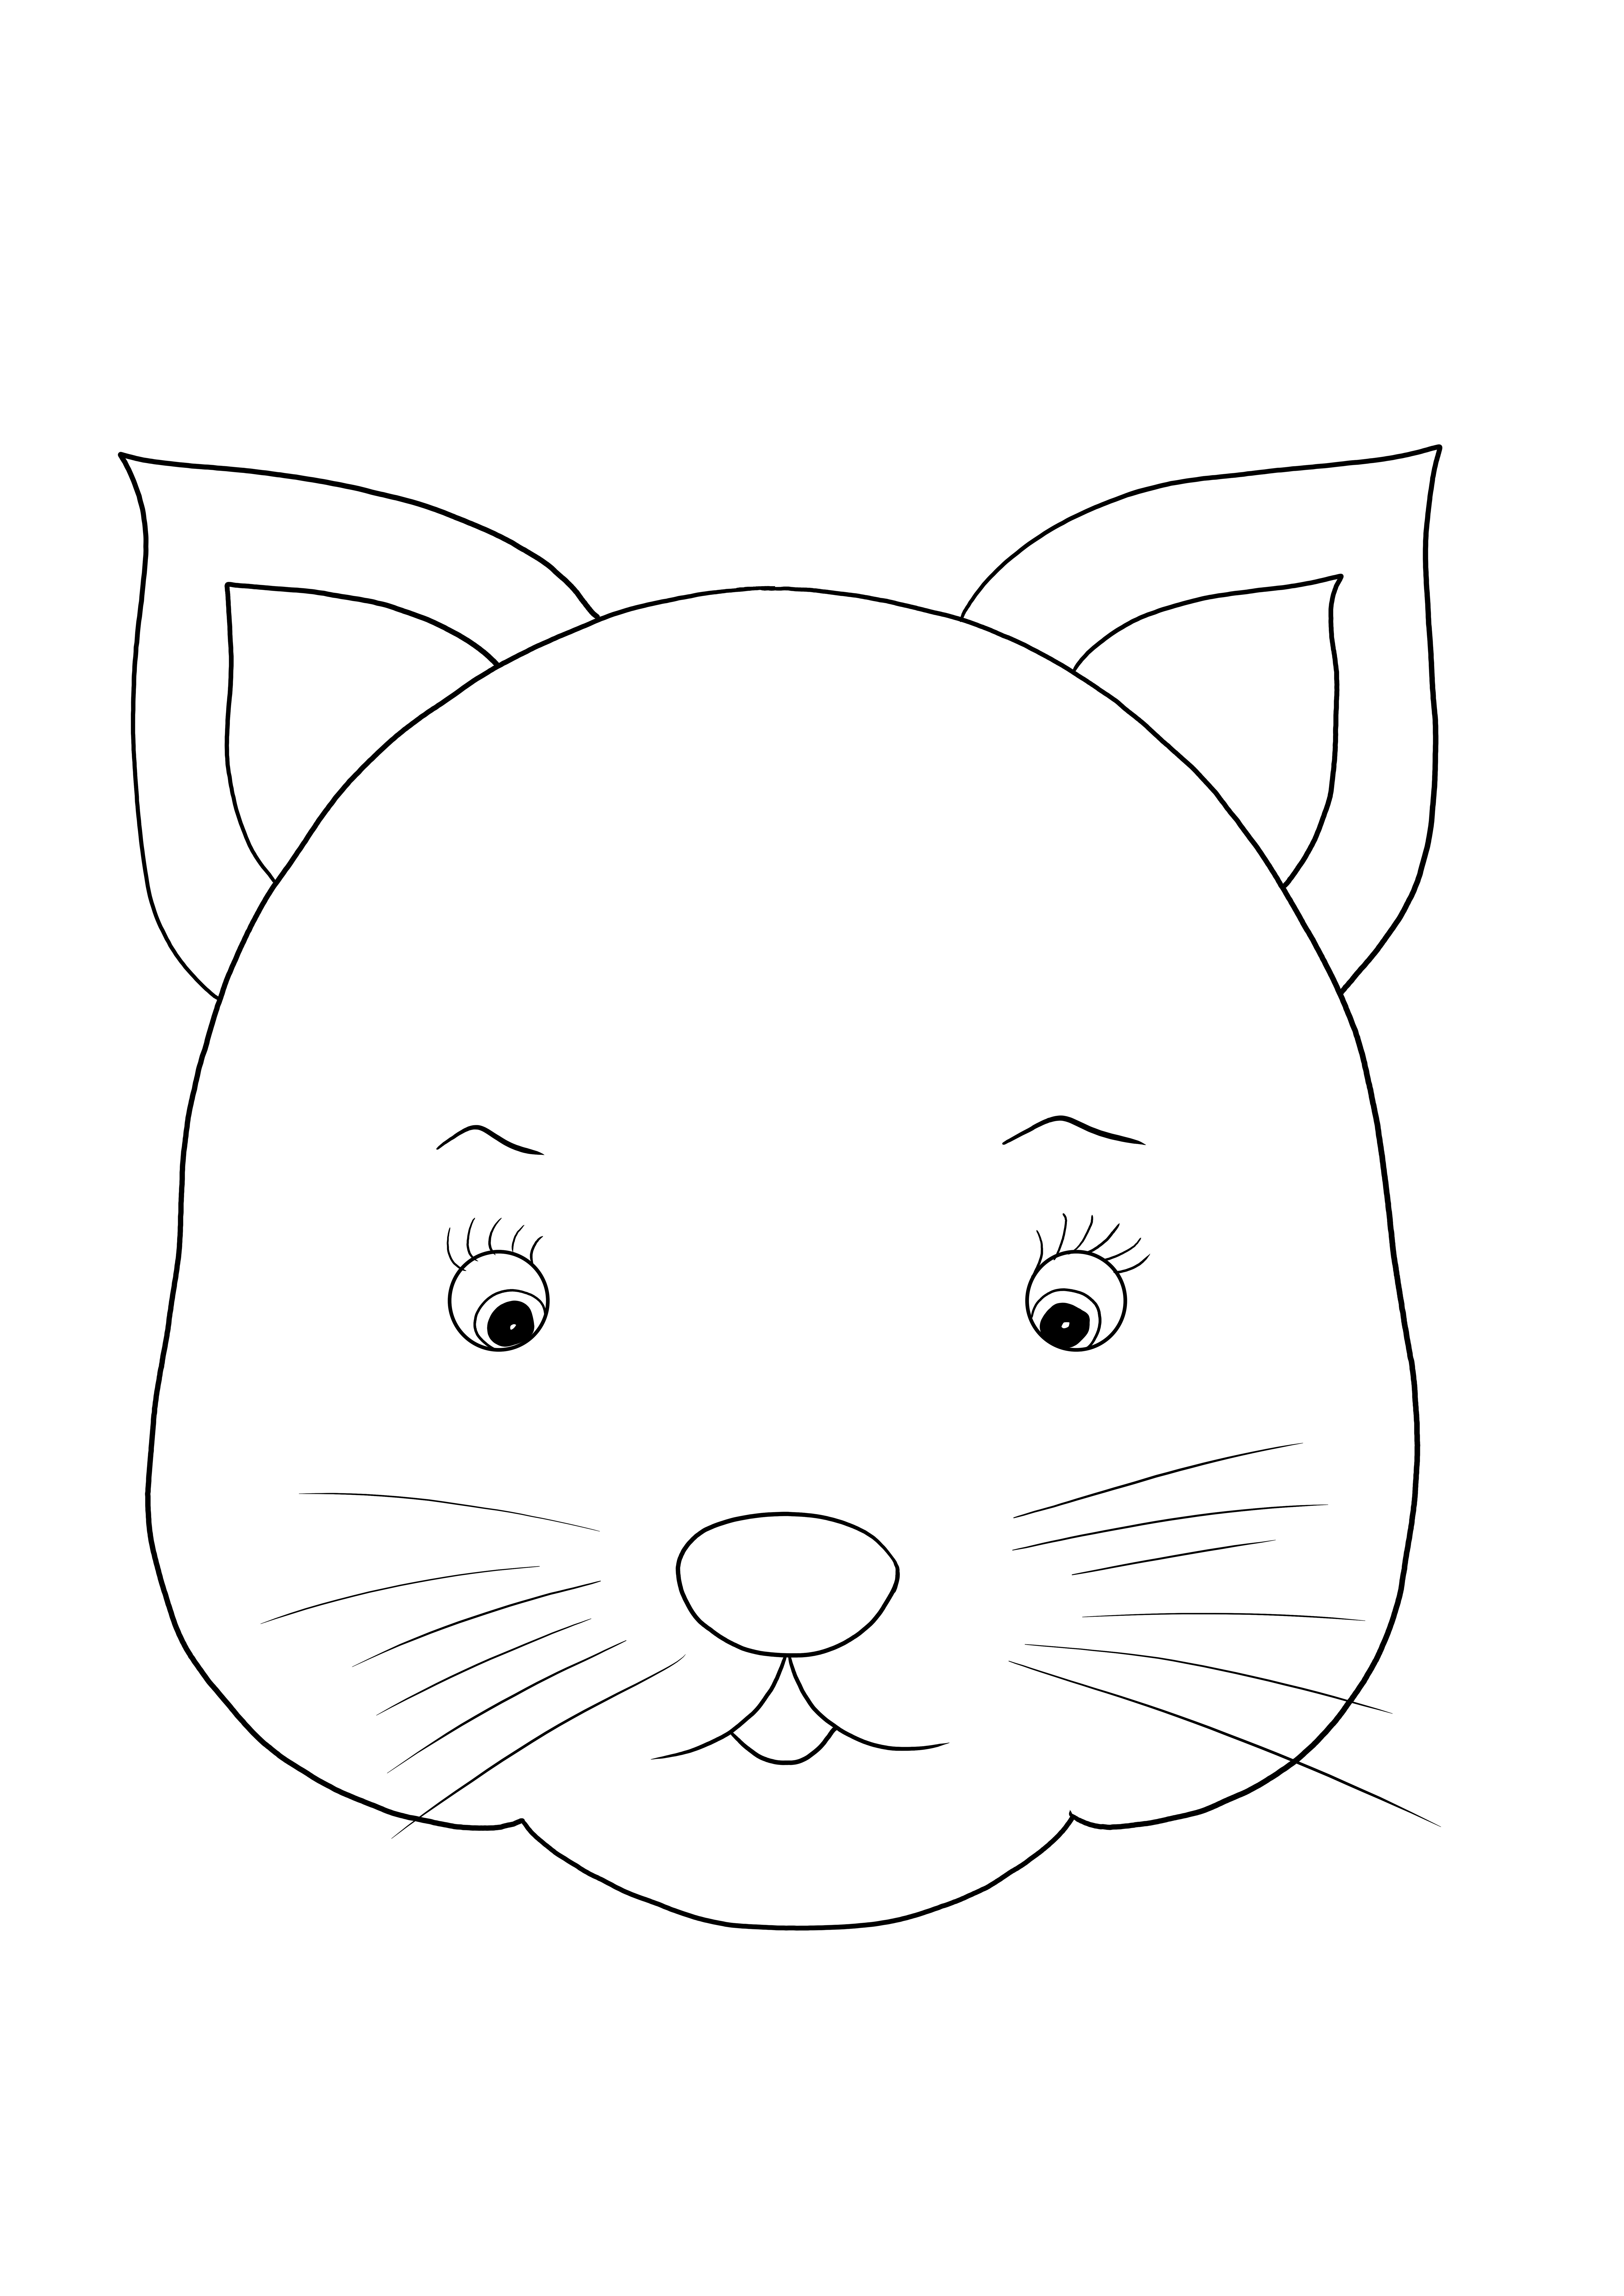 Lindo regalo de cara de gato para que los niños impriman y coloreen simplemente